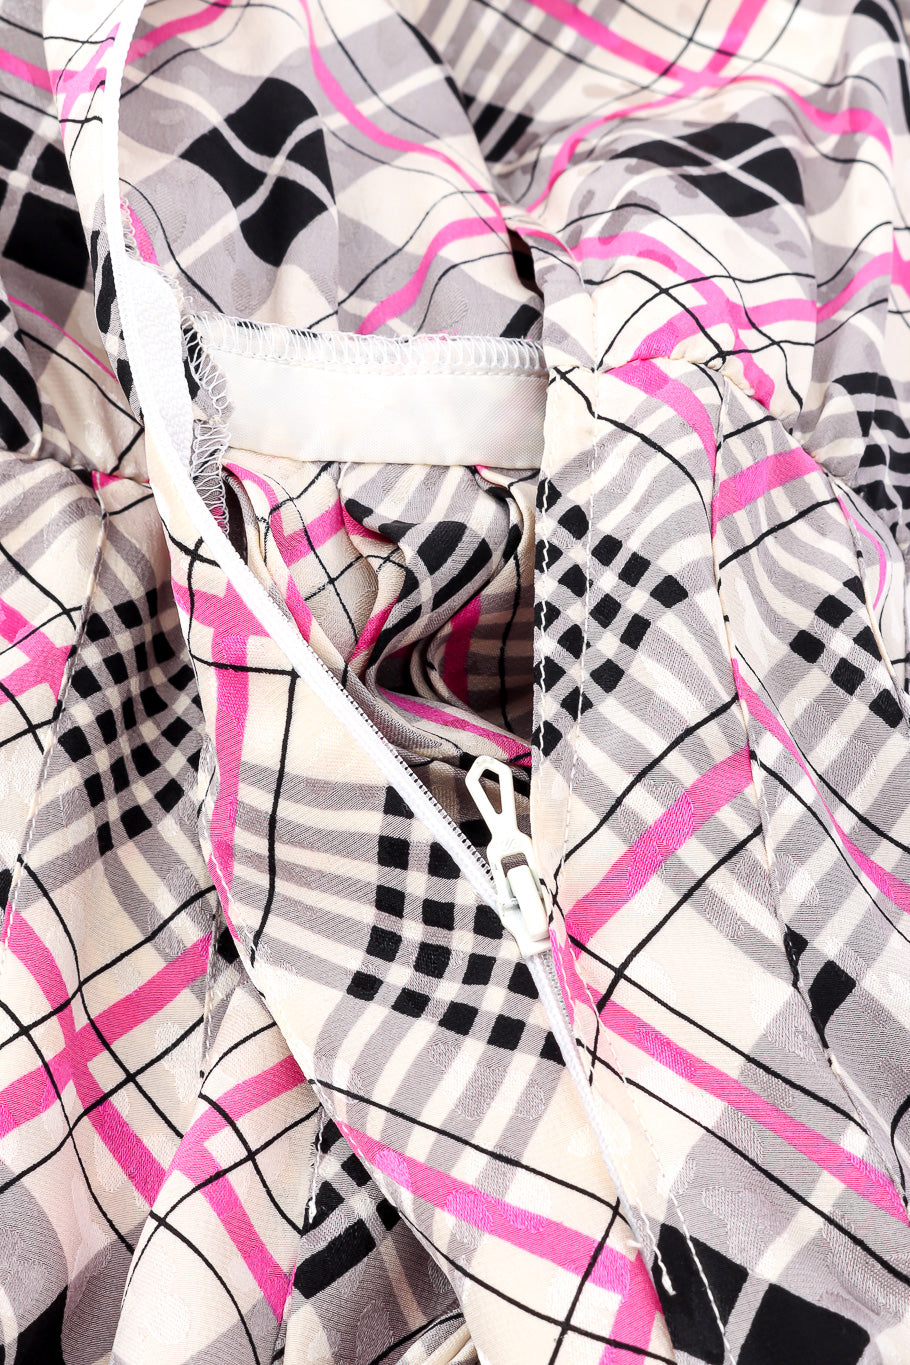 Silk dress by Saint Laurent zipper @recessla